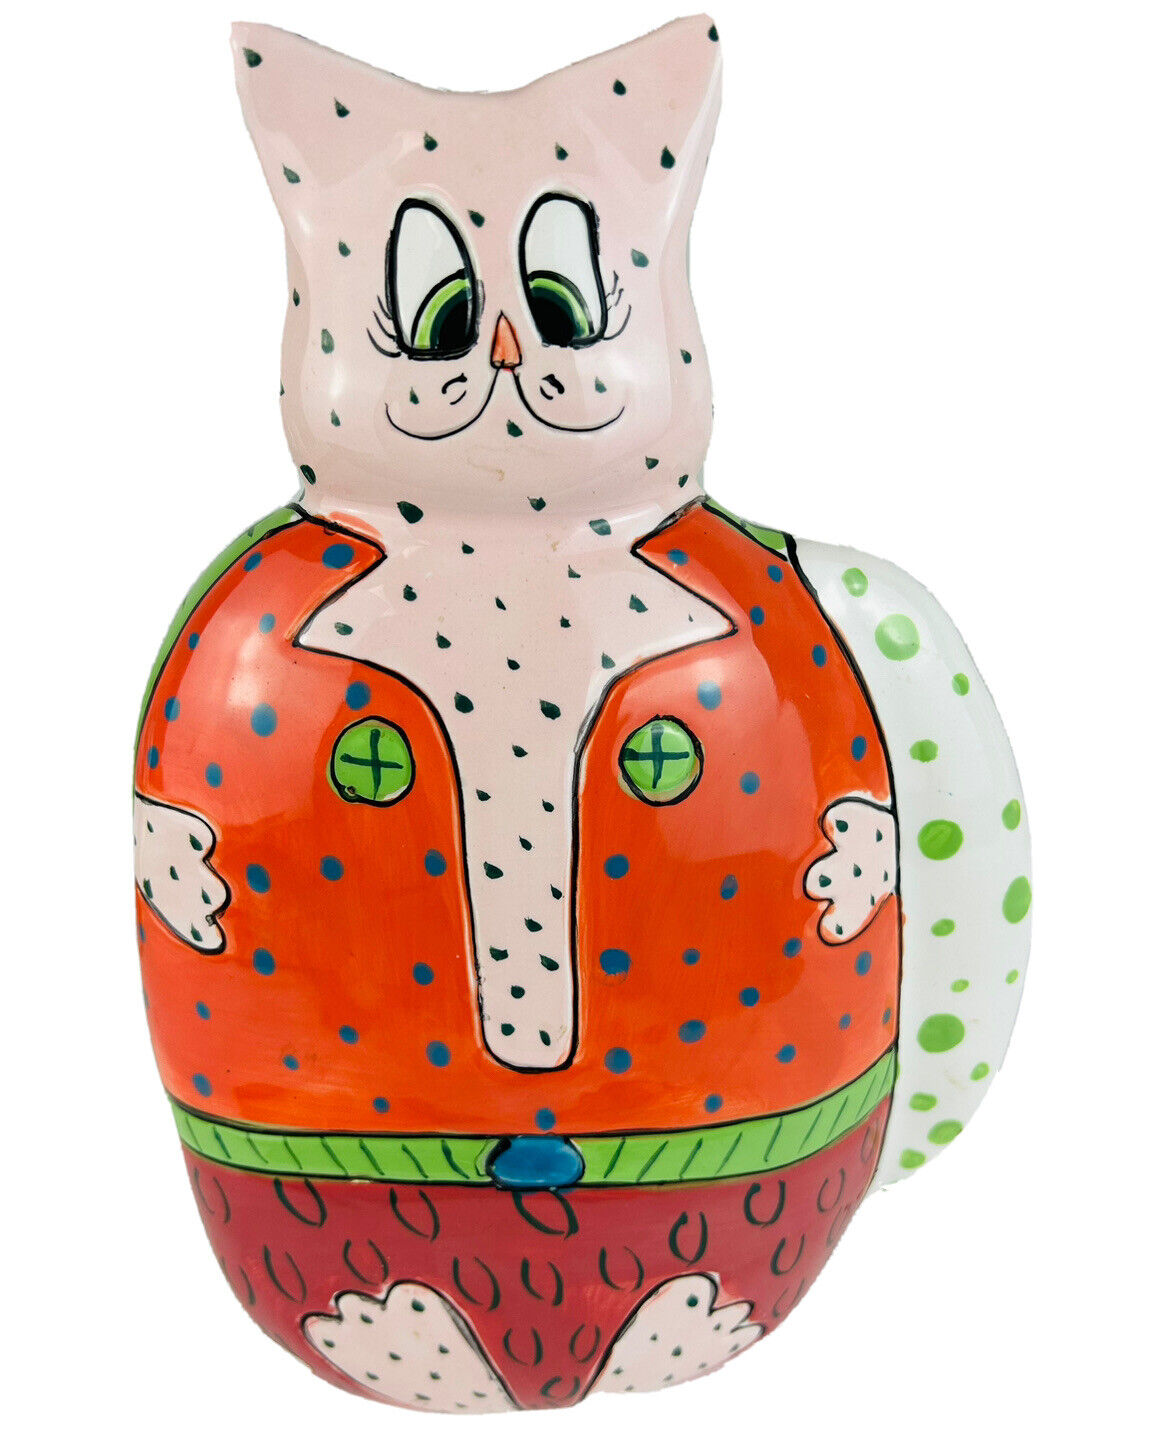 Ganz Pati Ceramic Piggy Bank Kitty Cat Anthropomorphic Handpainted Whimsical